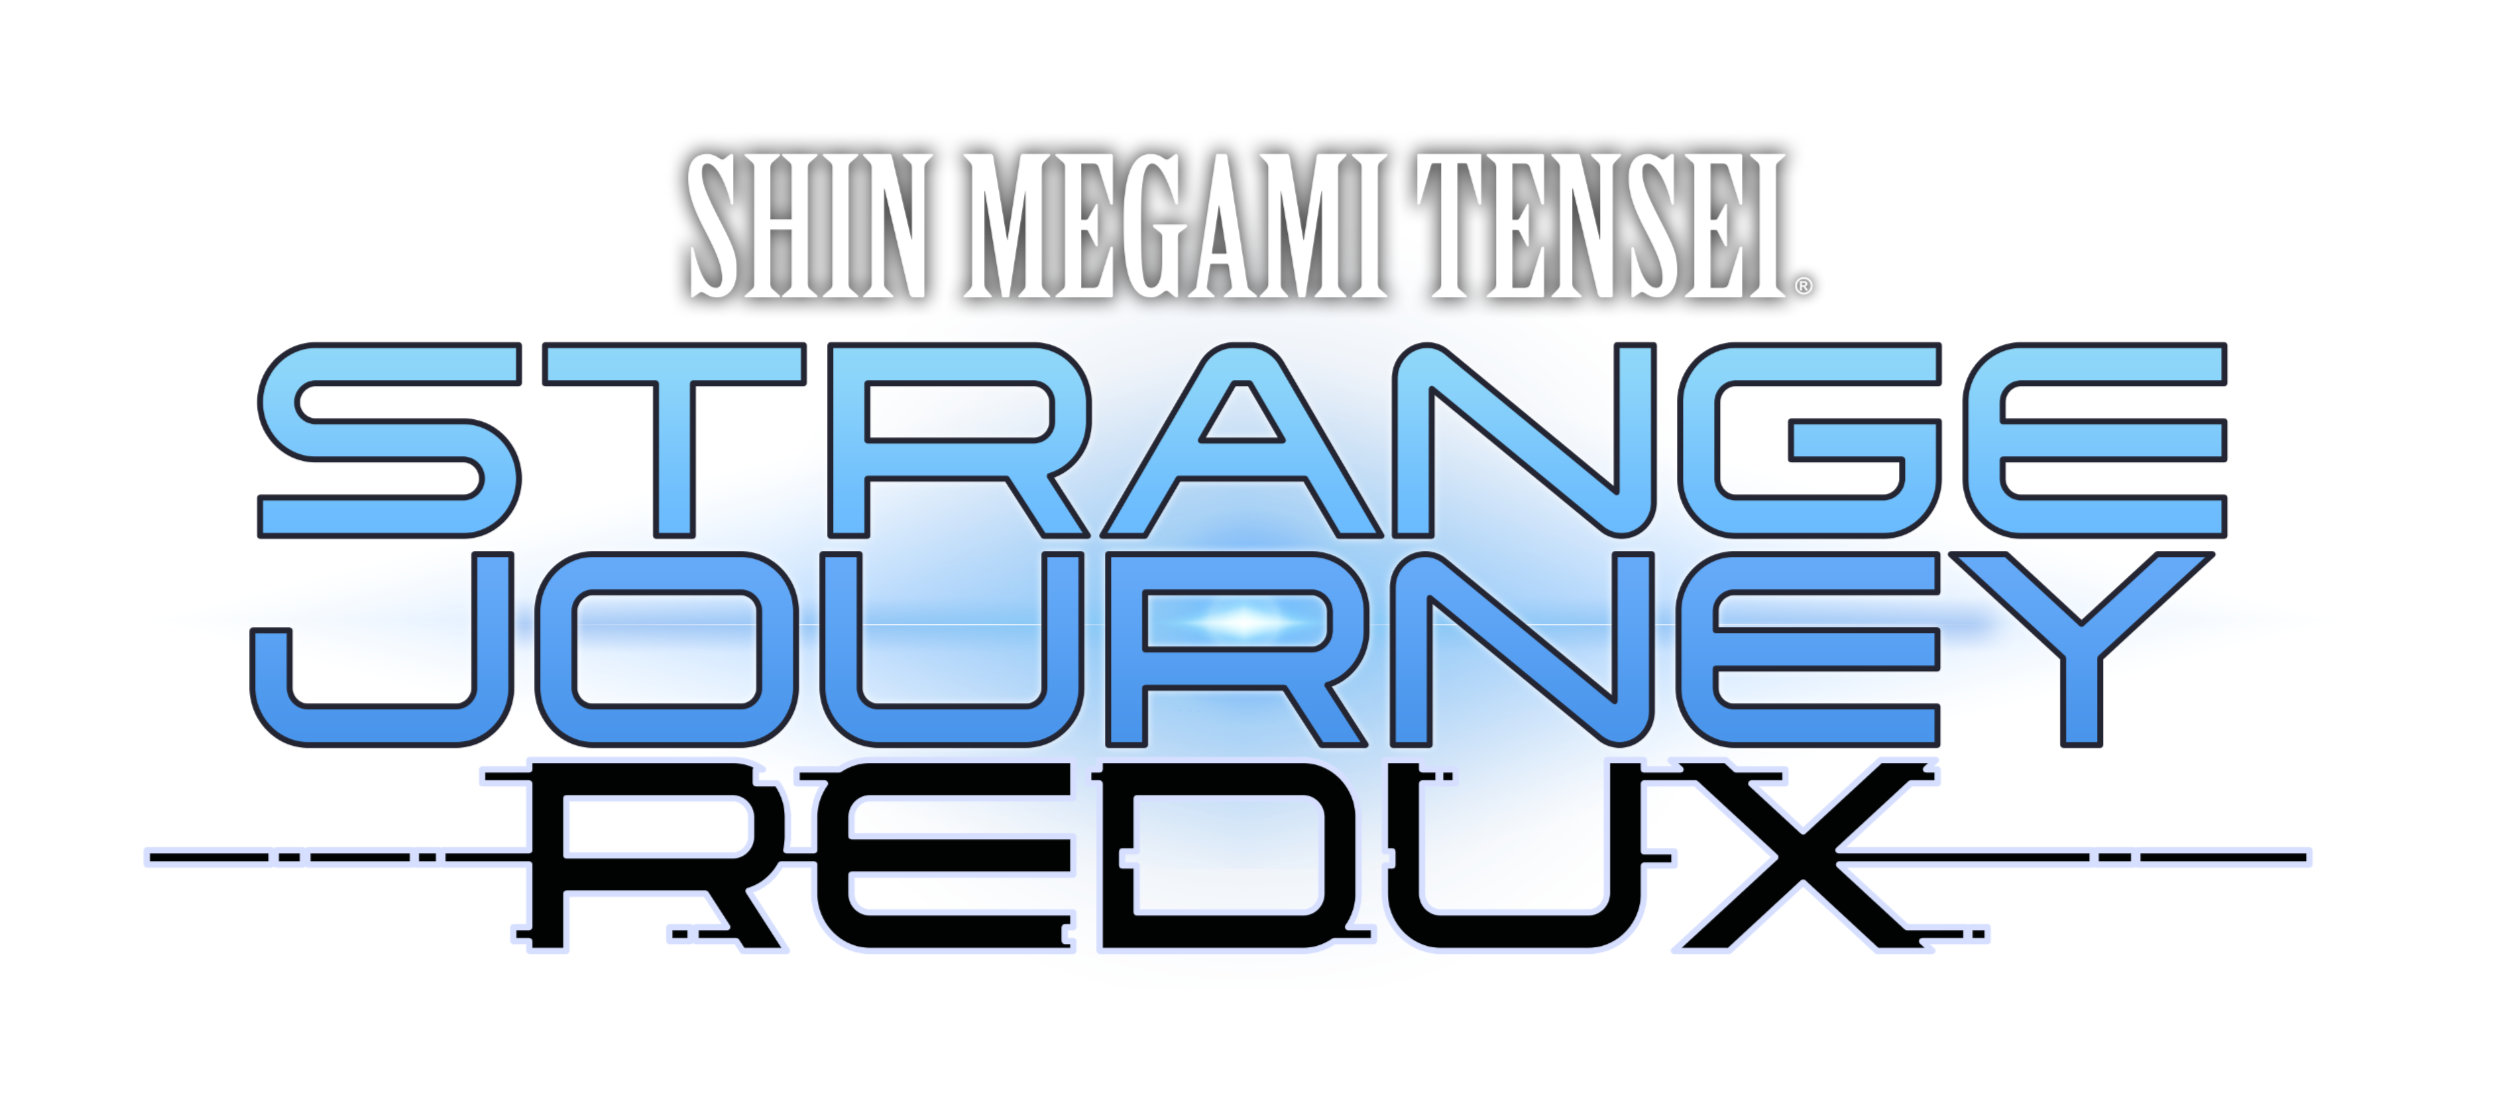 Shin Megami Tensei Strange Journey Redux Logo White BG